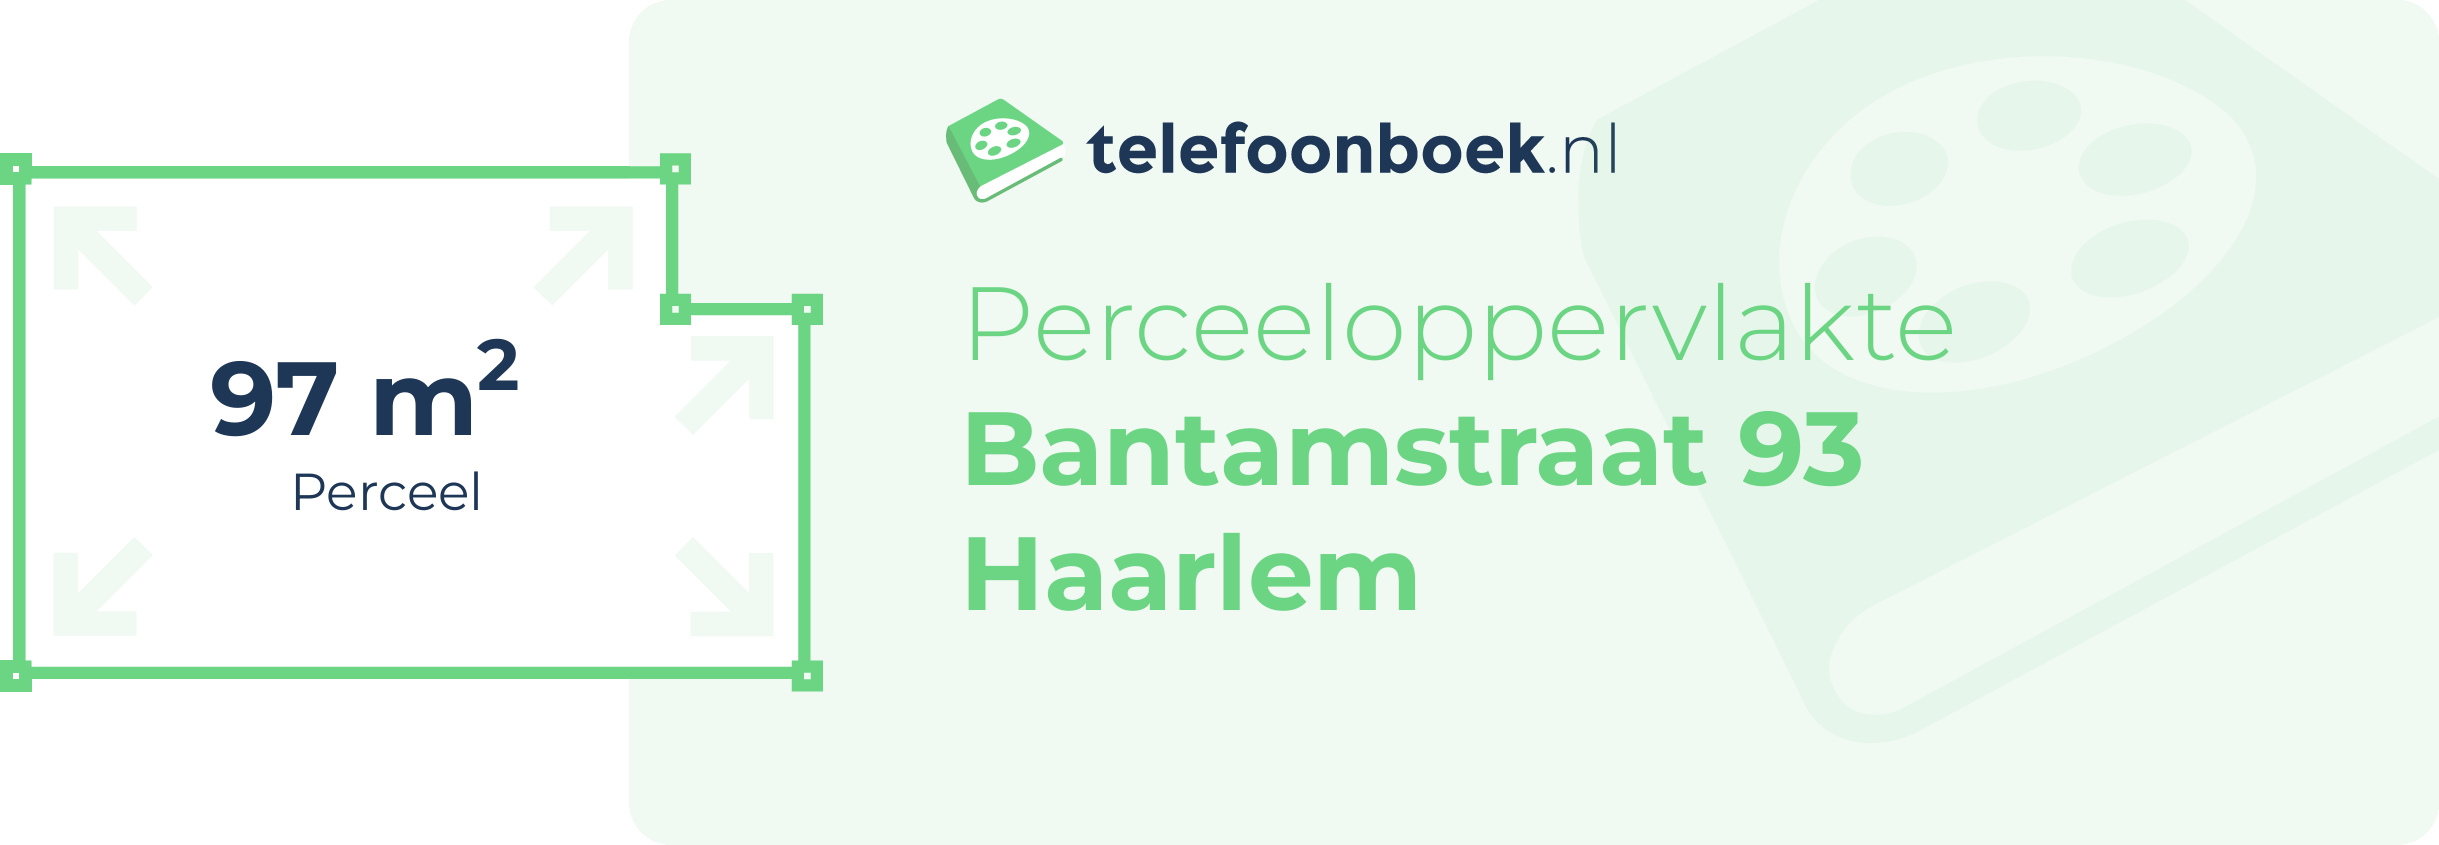 Perceeloppervlakte Bantamstraat 93 Haarlem